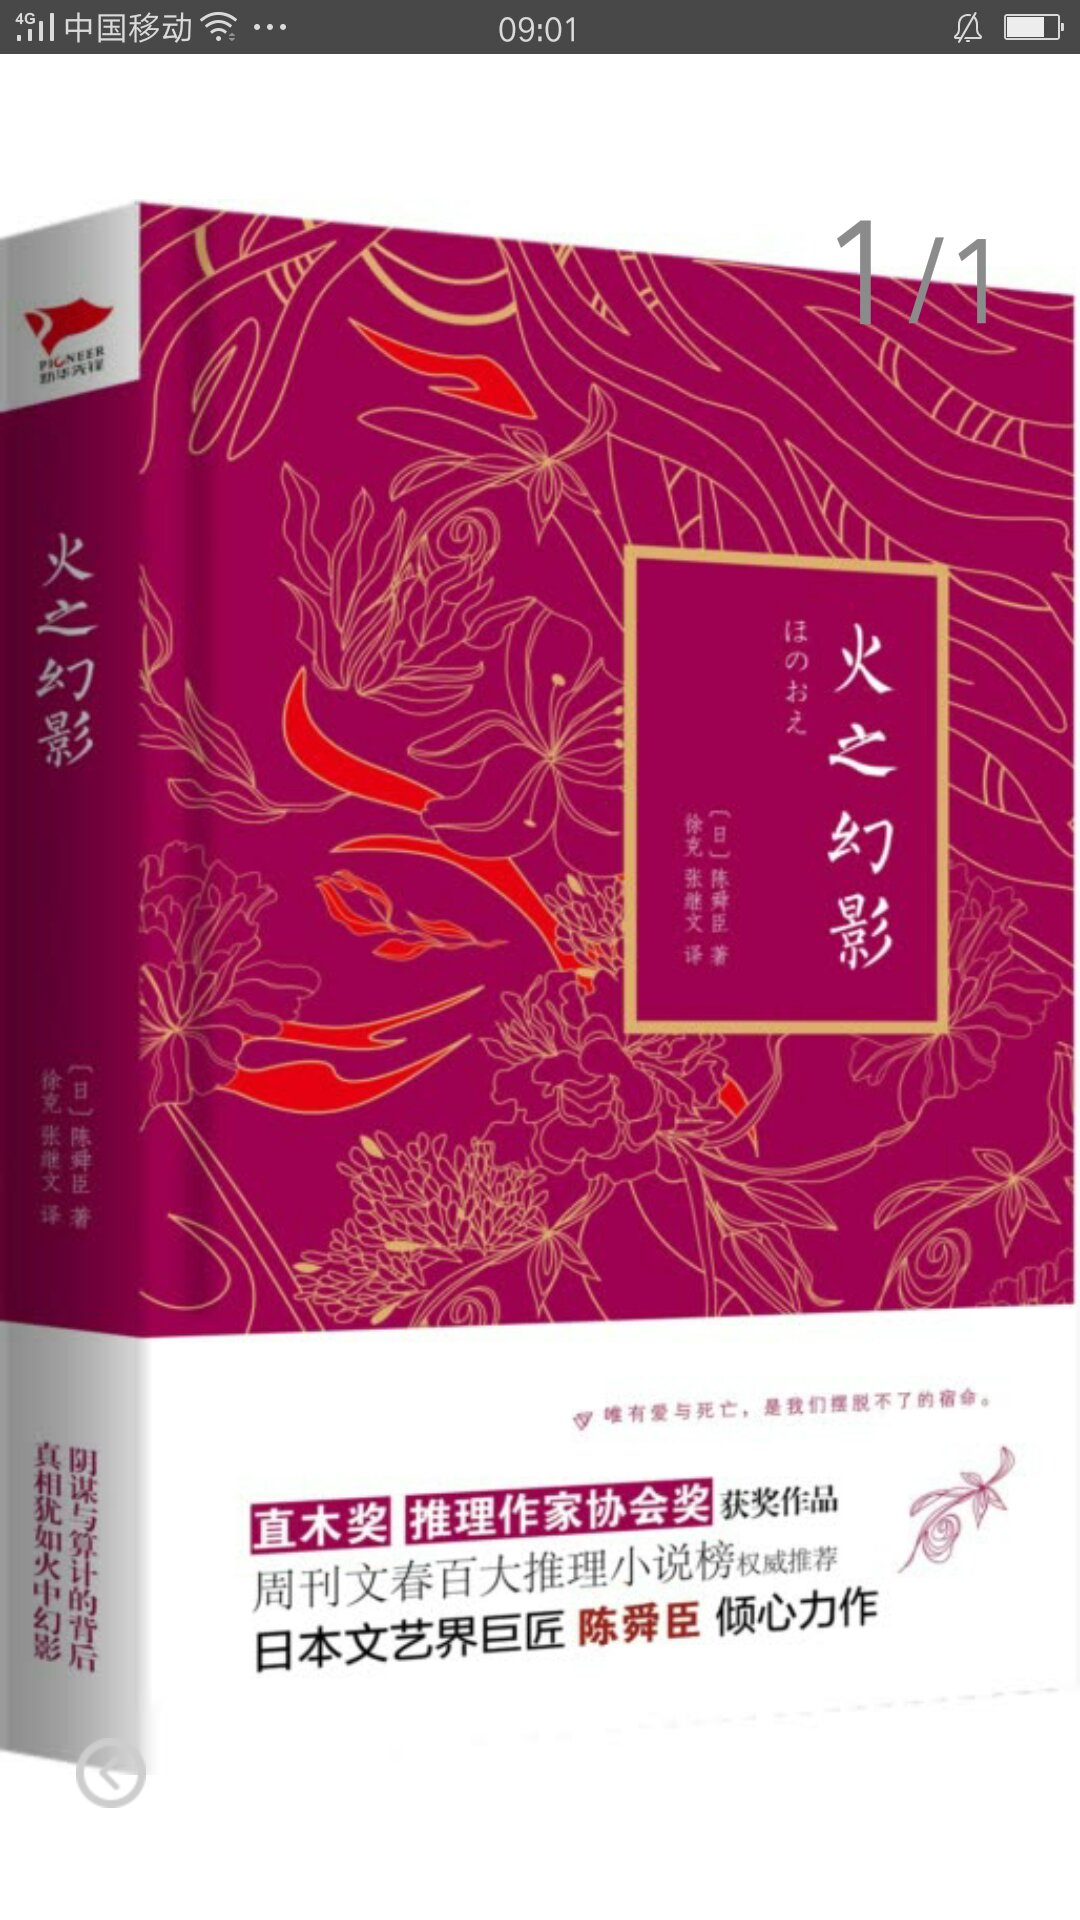 《火之幻影》是著名日本作家陈舜臣最得意的推理小说。主人公叶村省吾的义母离奇死亡，在场所有人都有完美的不在场证据，凶手究竟是谁？随着调查的不断展开，一个个更大的阴谋也慢慢浮出水面。 